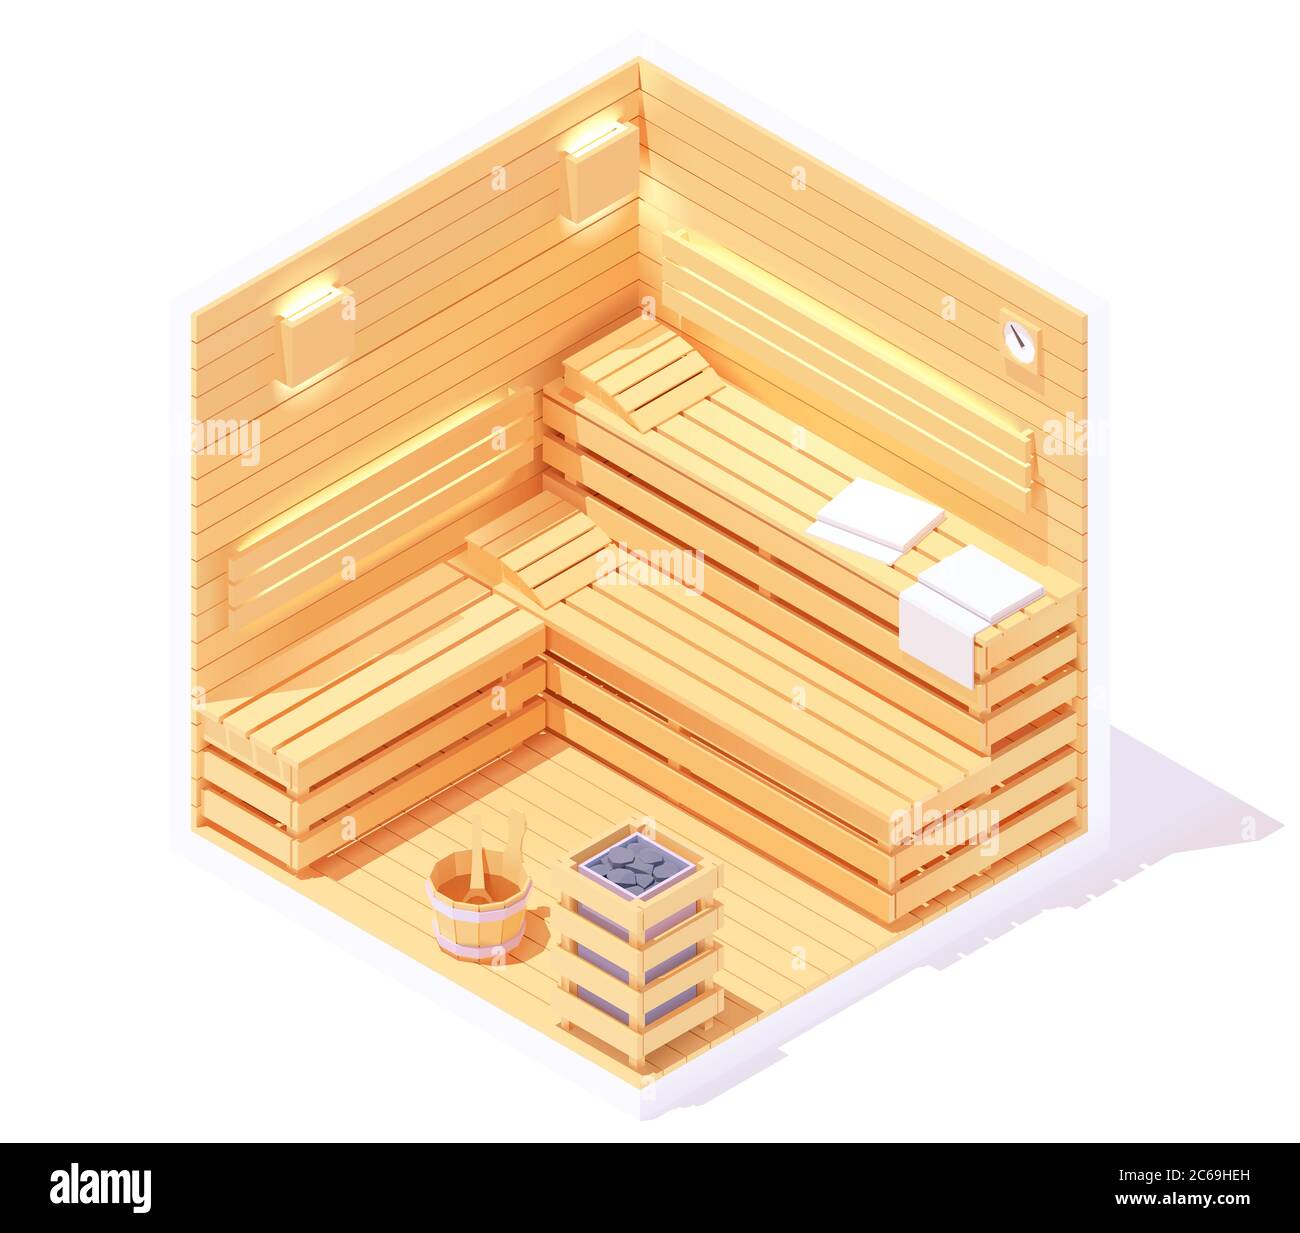 Interno sauna isometrica vettoriale Illustrazione Vettoriale